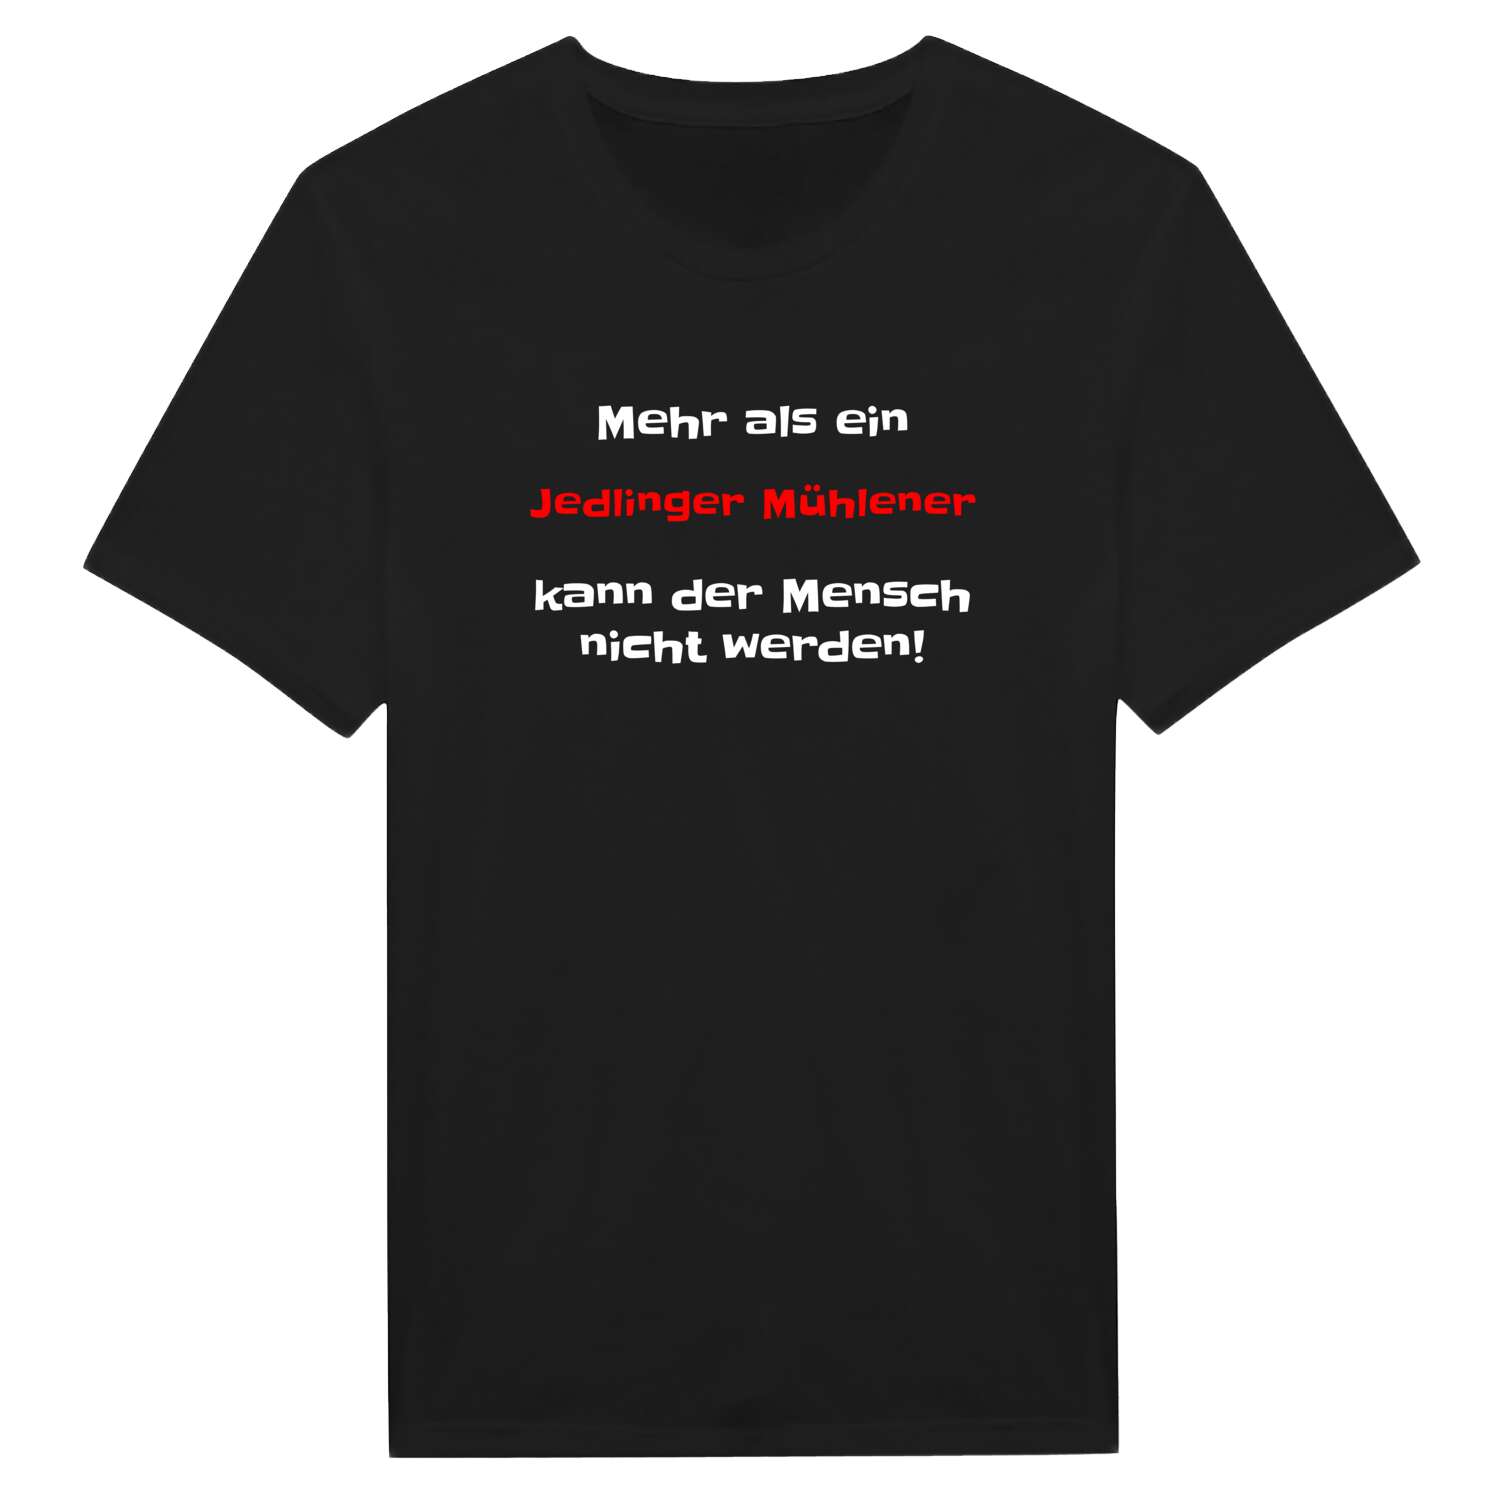 Jedlinger Mühle T-Shirt »Mehr als ein«